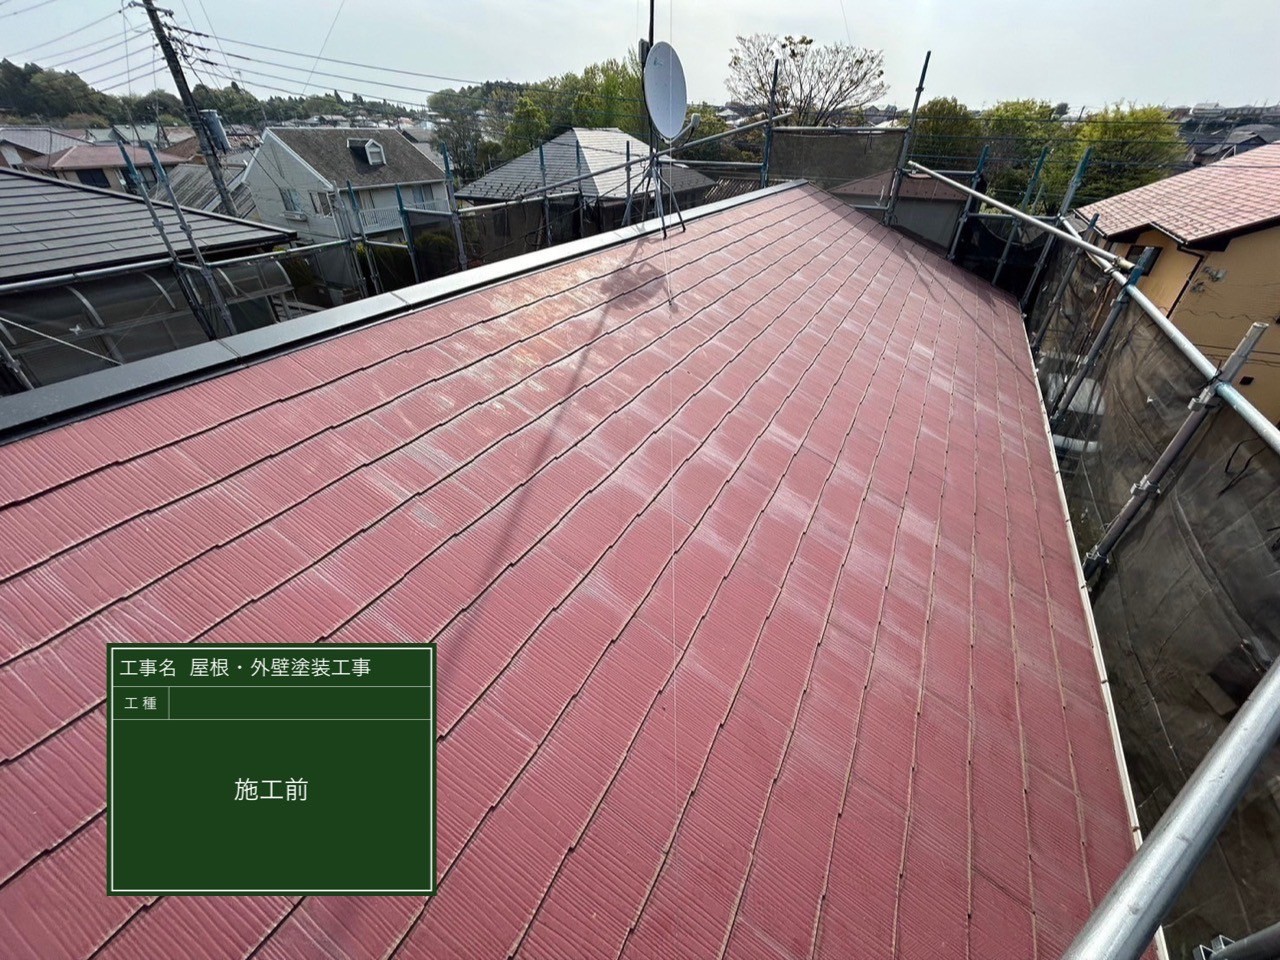 千葉県八街市にて屋根修理・塗装工事〈貫板交換と屋根壁塗装工事〉の施工前写真